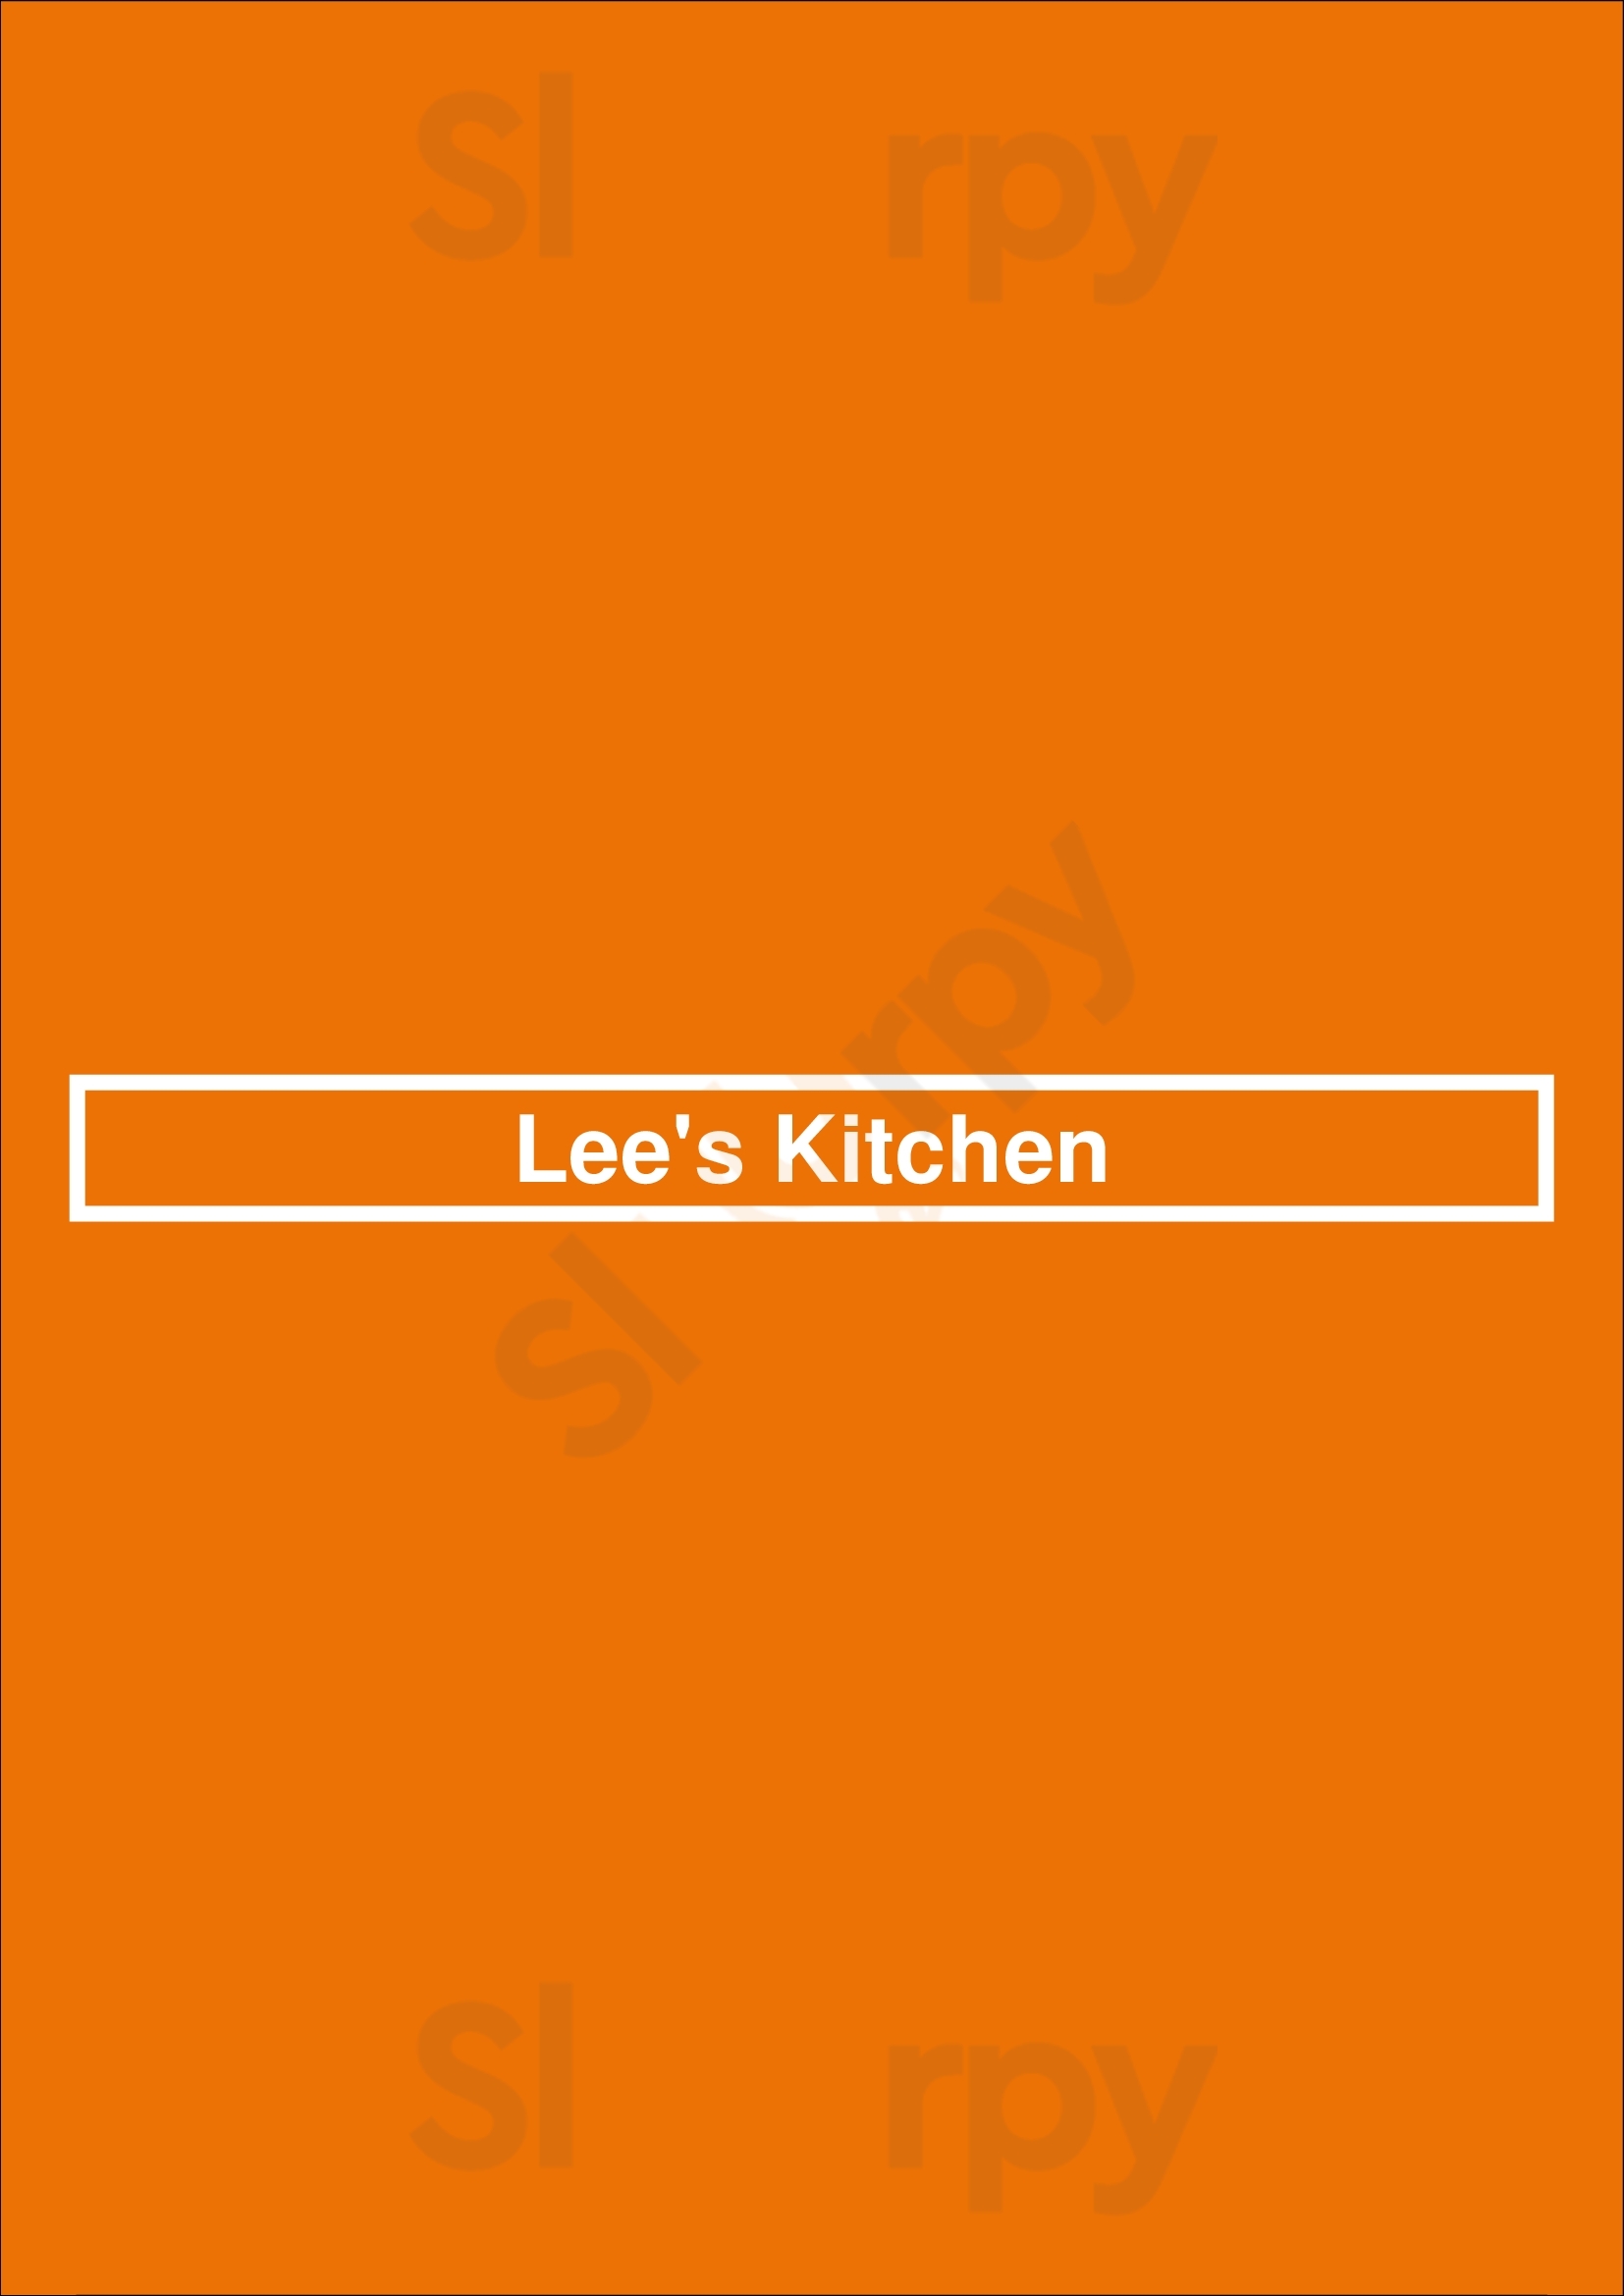 Lee's Kitchen San Antonio Menu - 1